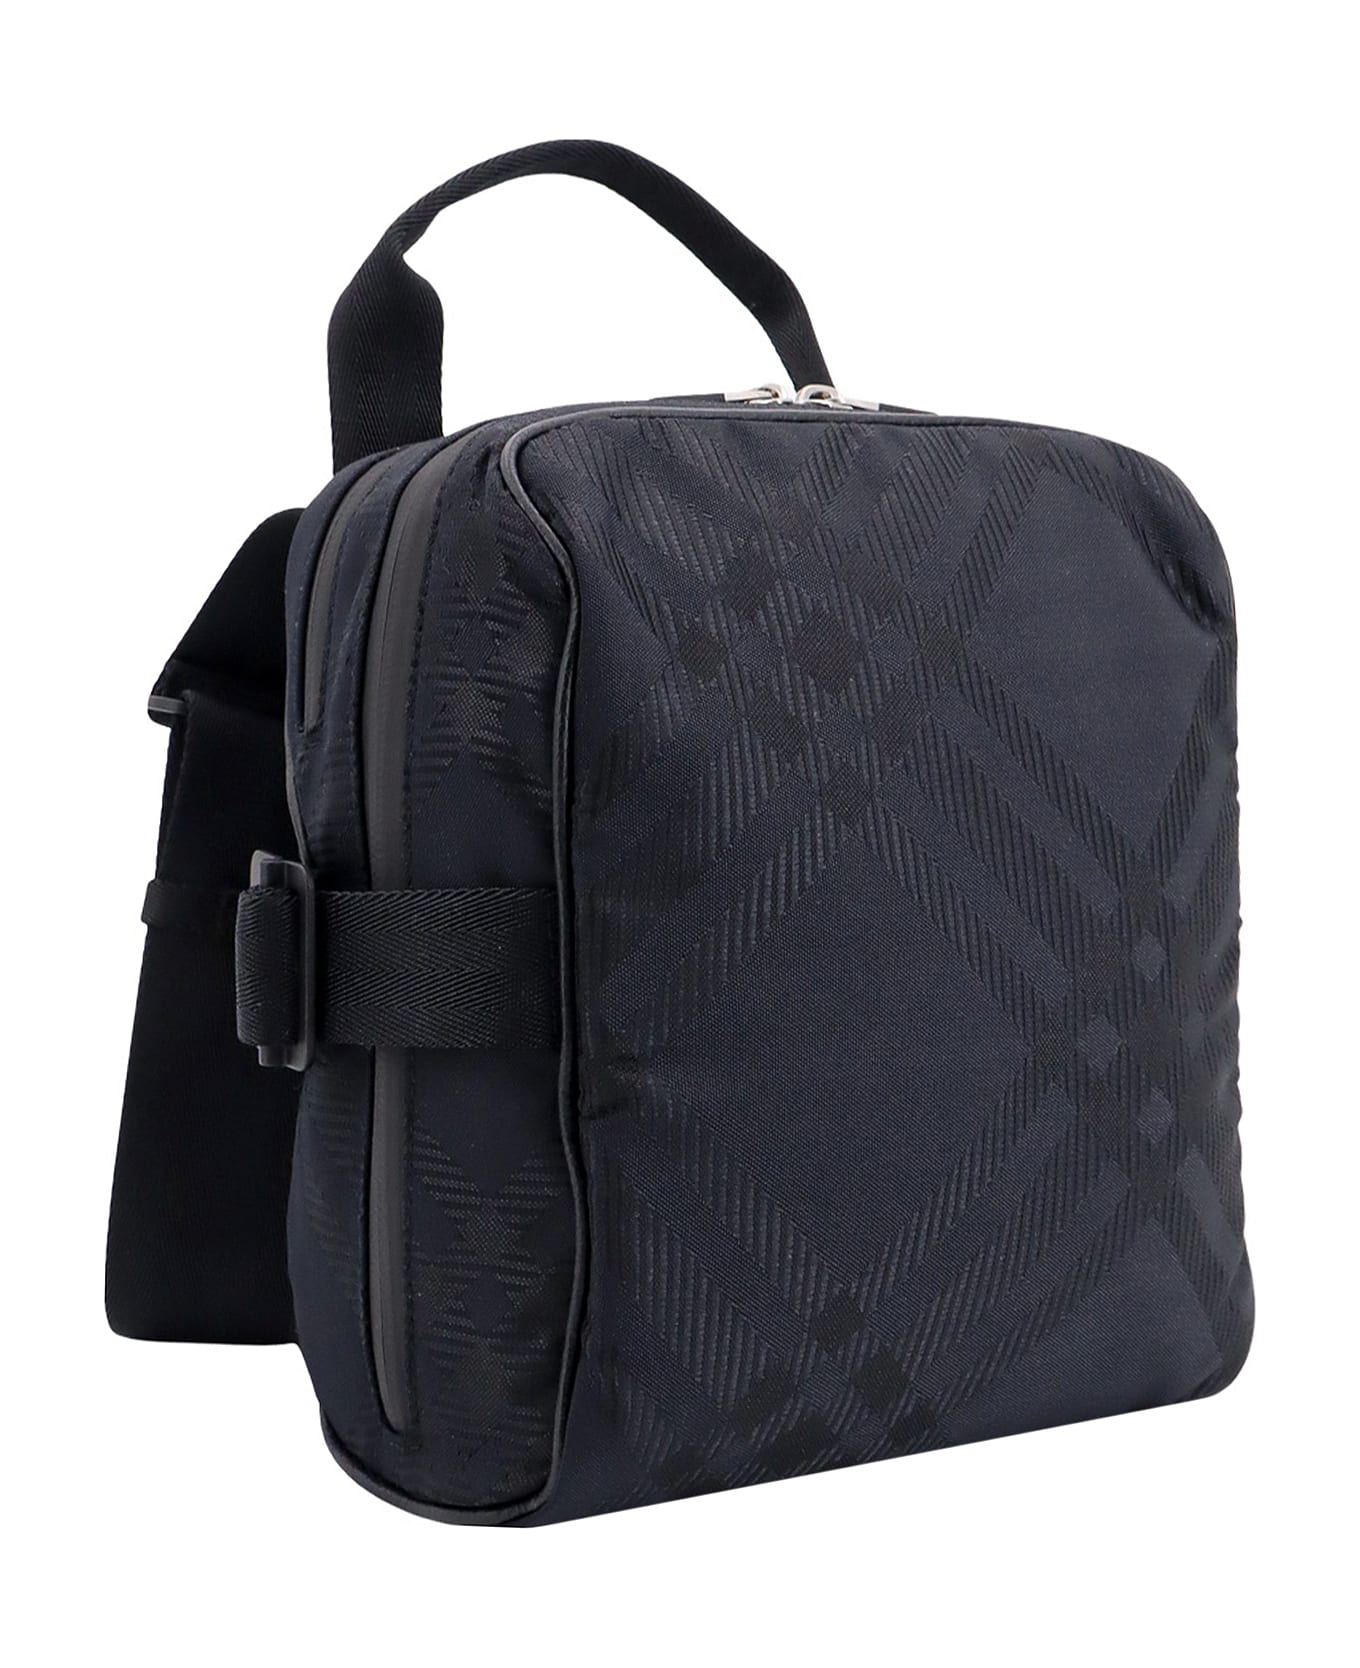 Burberry Check Shoulder Bag - Black